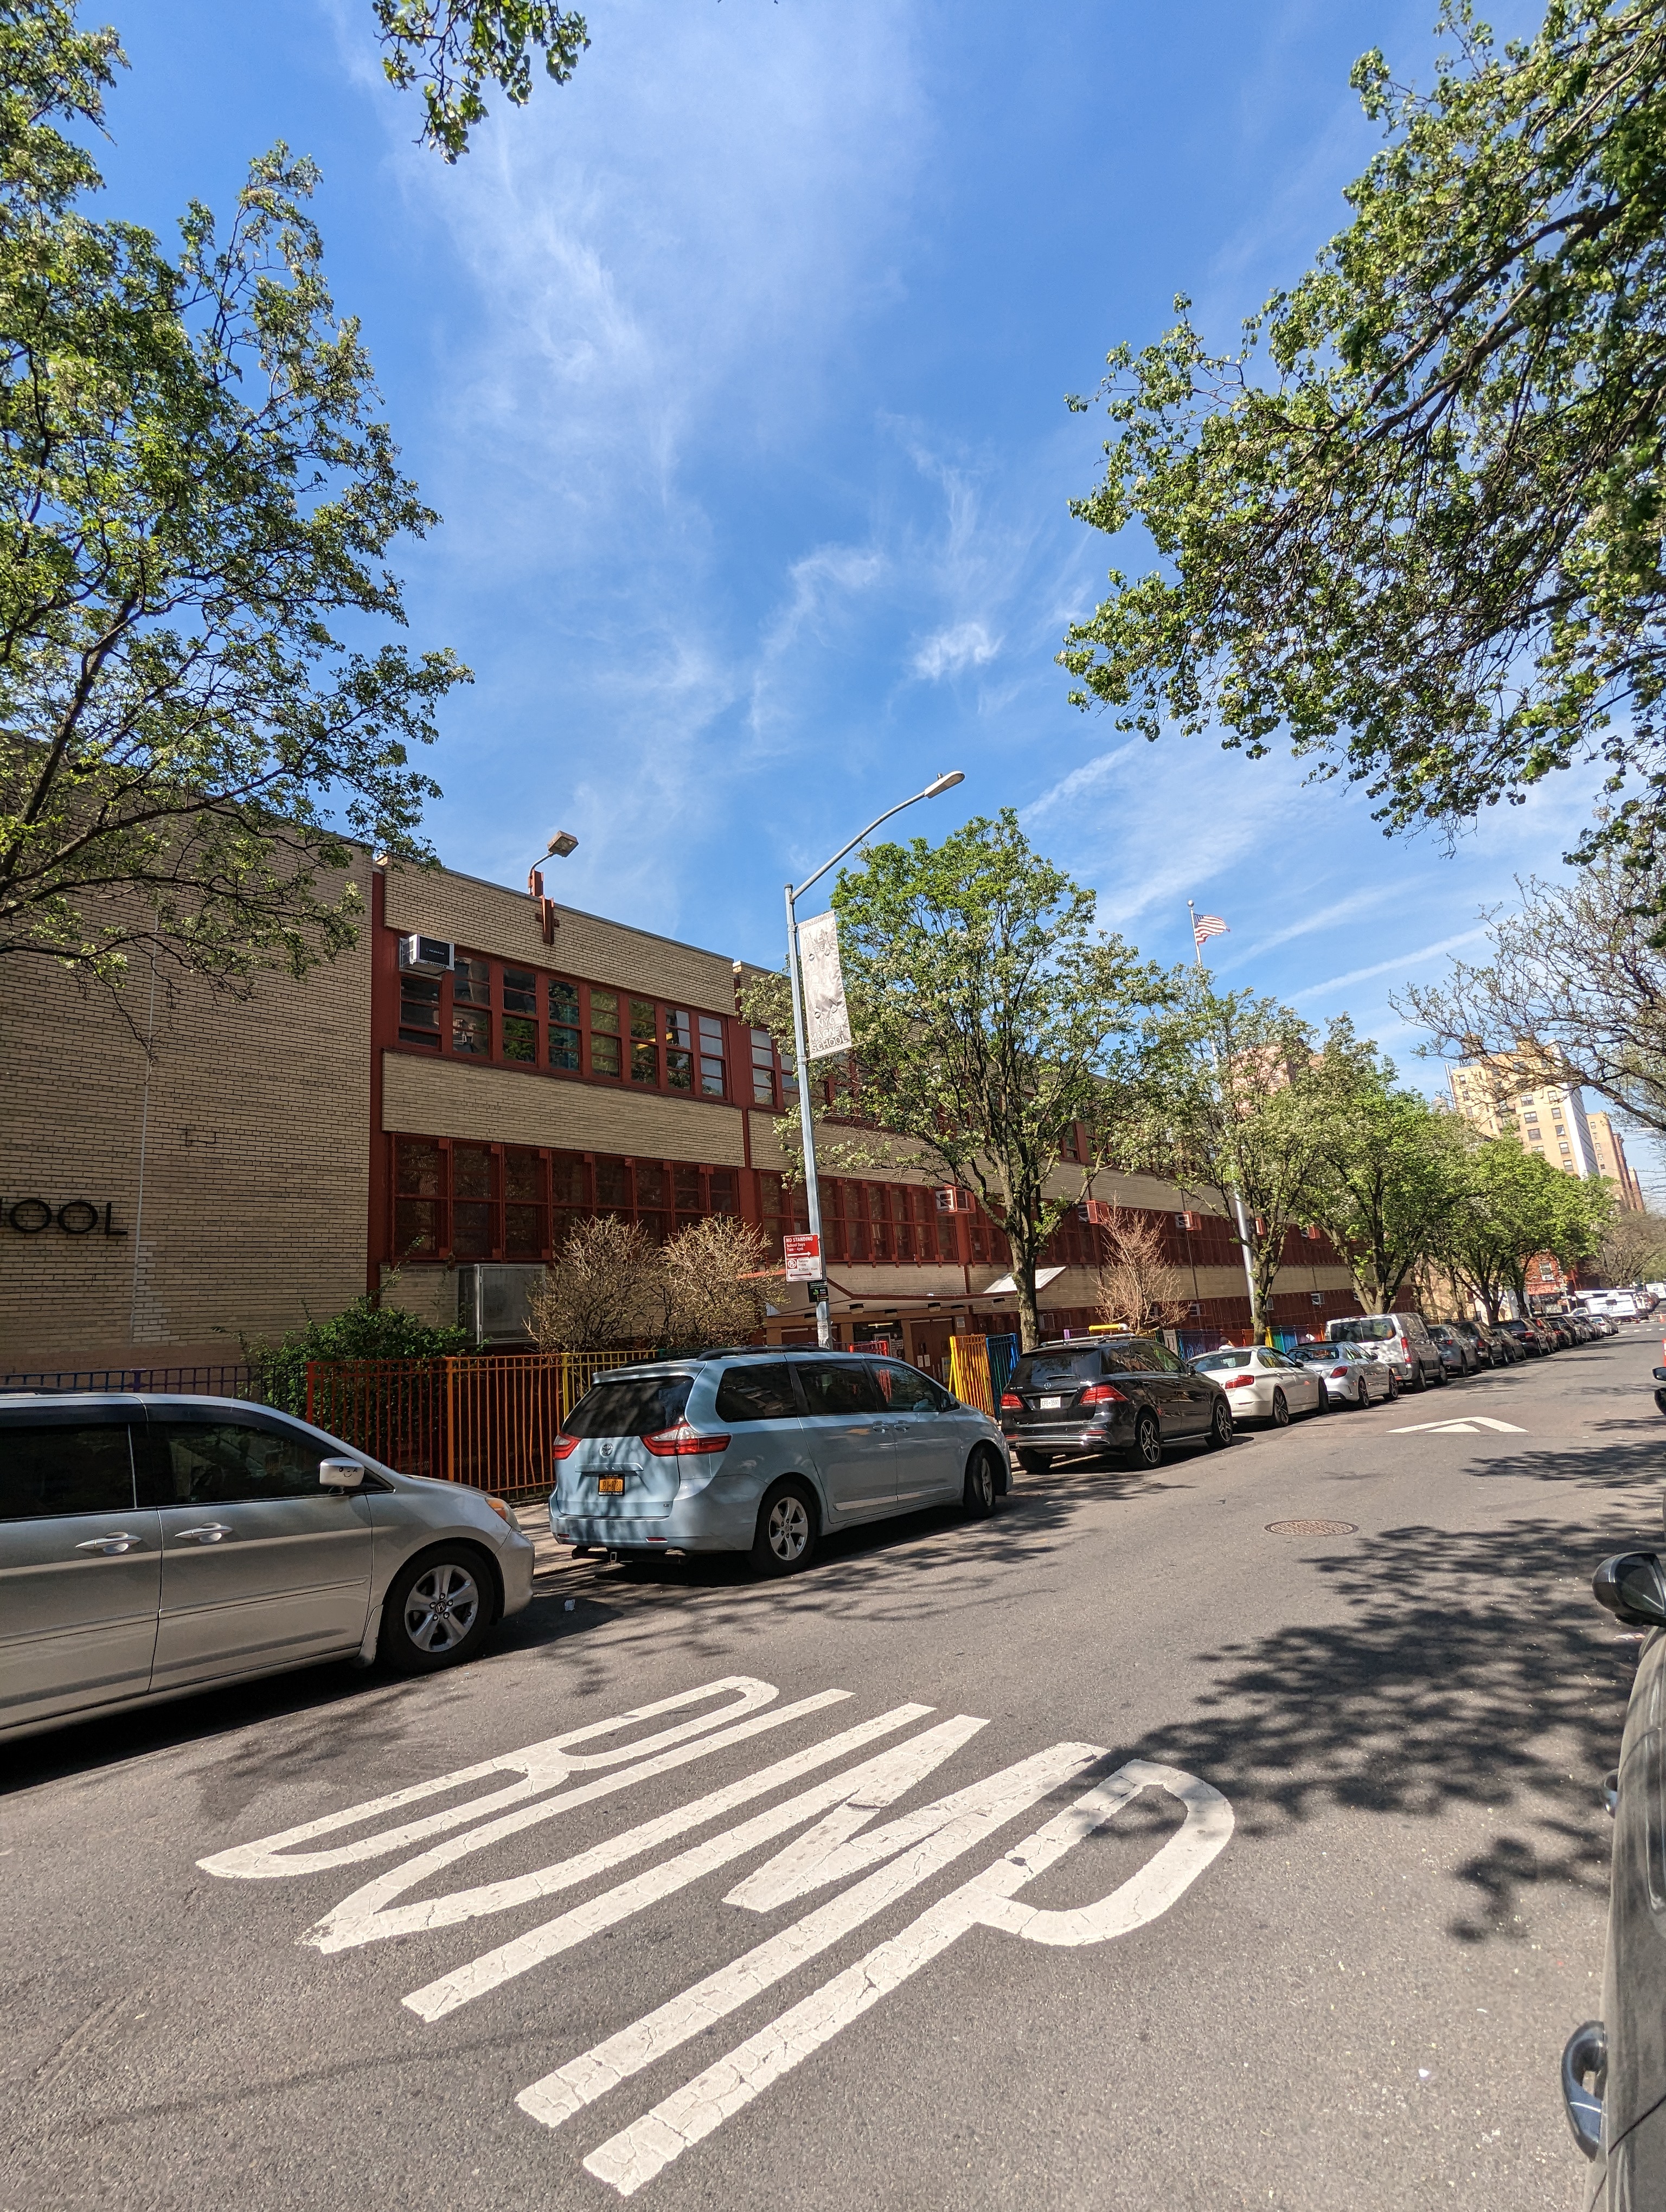 150 West 105th Street: The Bloomingdale School